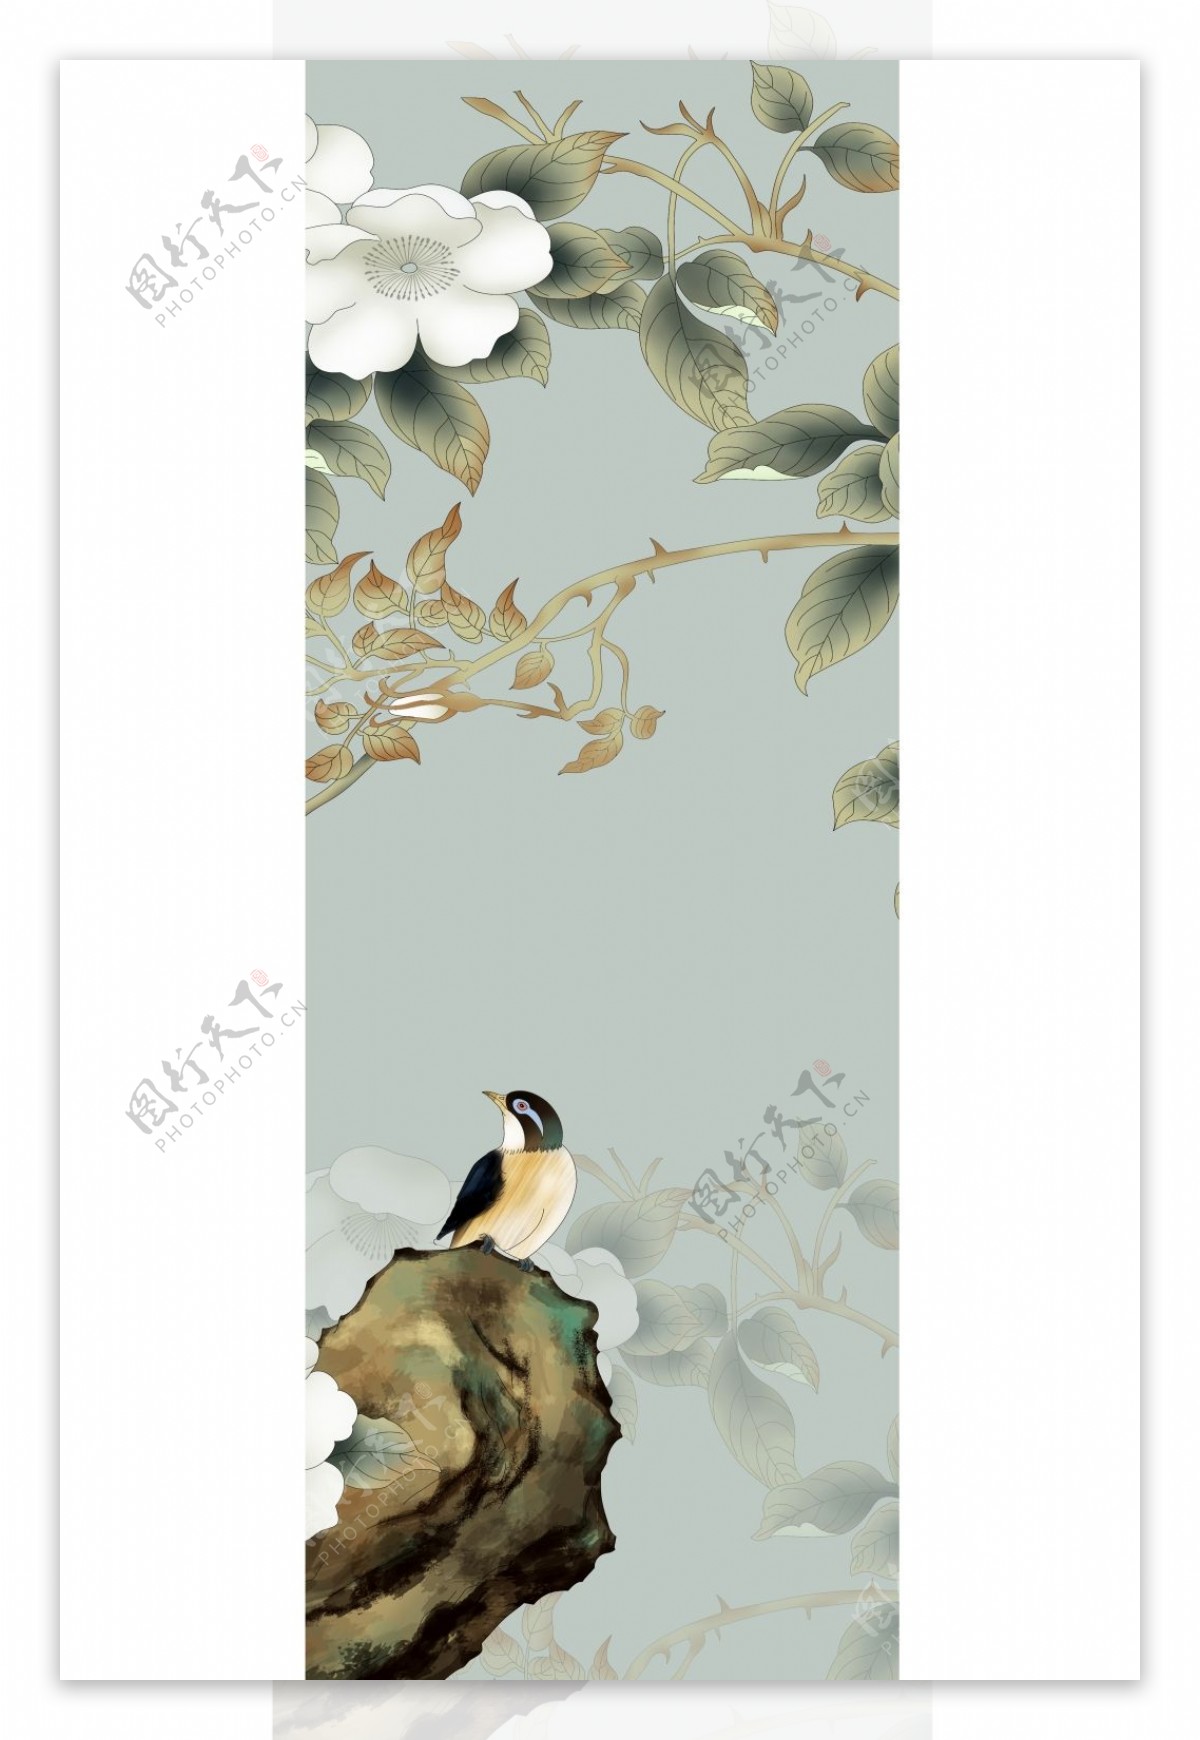 手绘中国风动物小鸟花朵装饰画